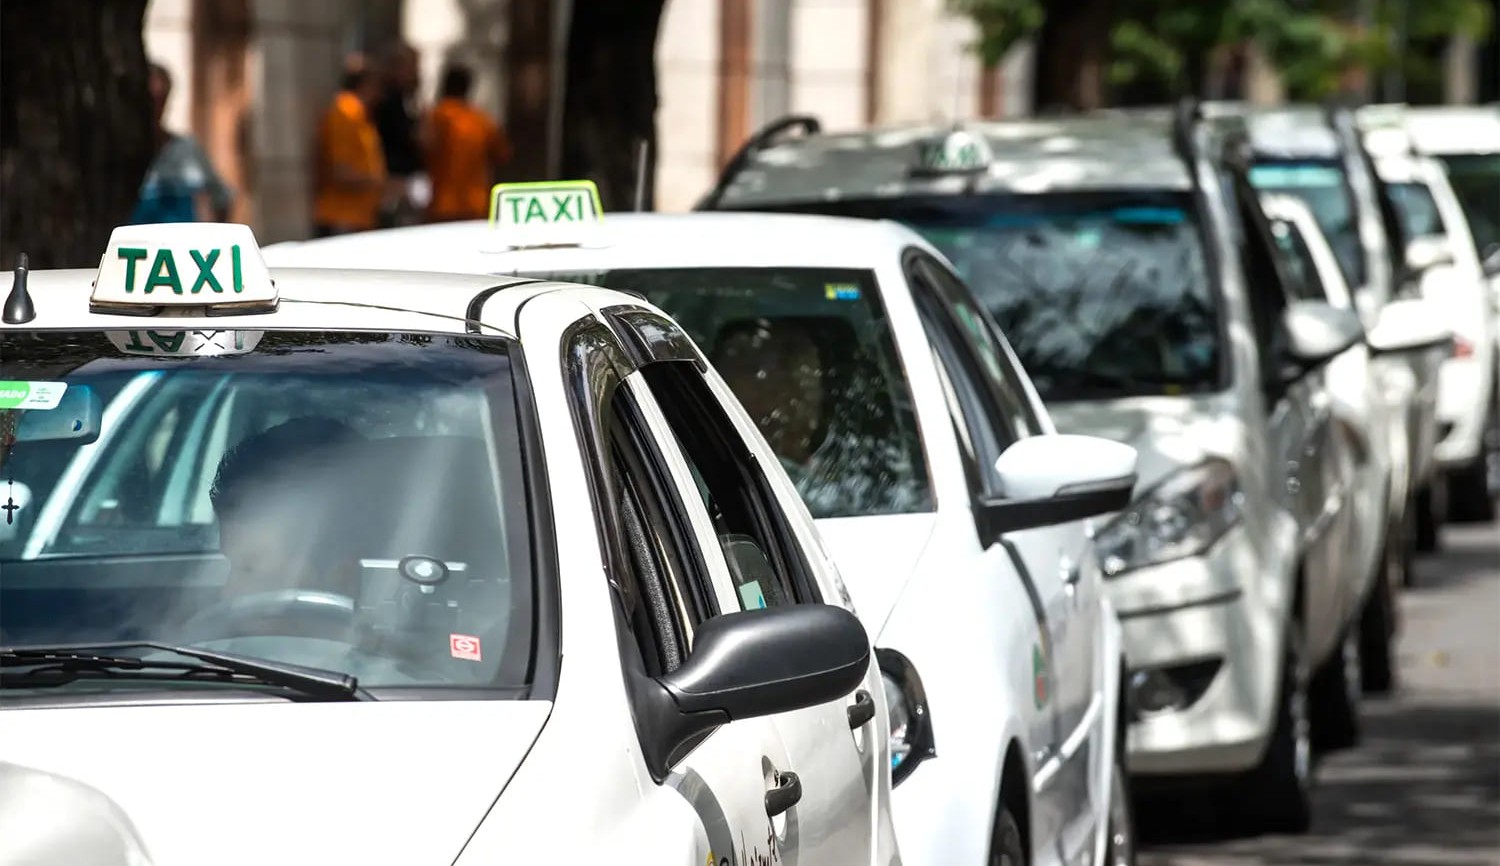 BEm Taxista: Benefício aos taxistas começa a ser pago nesta terça-feira